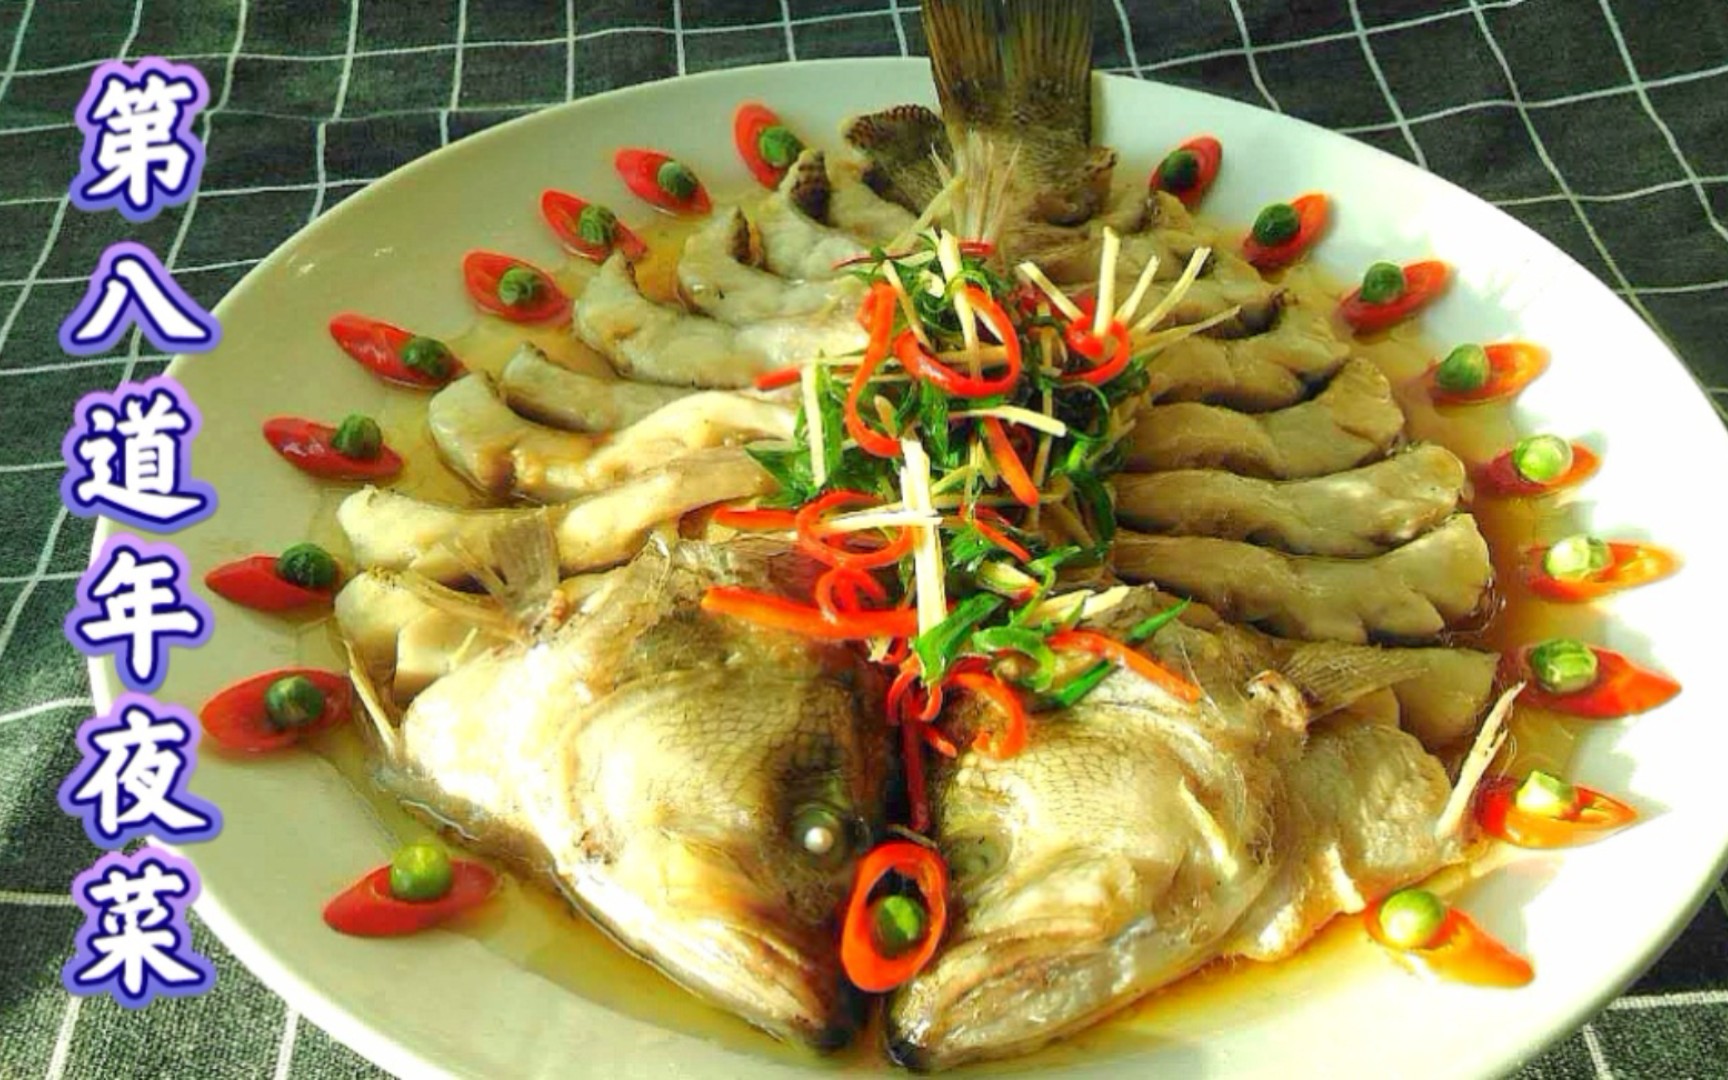 年夜饭第八道菜:孔雀开屏清蒸鲈鱼,摆盘详细教程,高颜值好美味